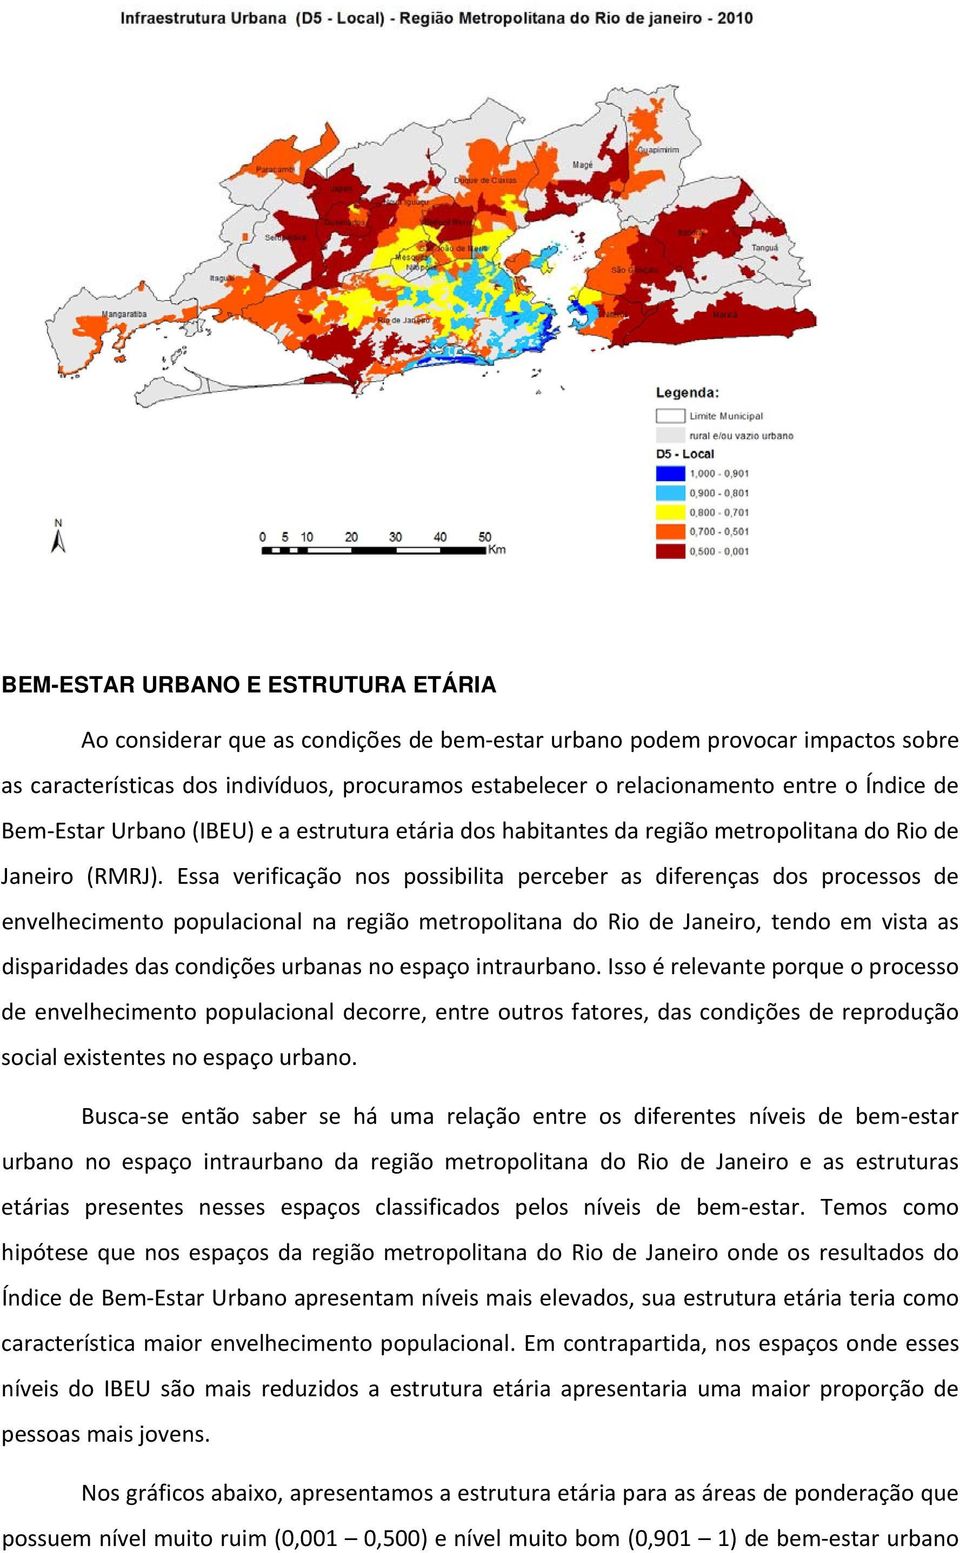 Essa verificação nos possibilita perceber as diferenças dos processos de envelhecimento populacional na região metropolitana do Rio de Janeiro, tendo em vista as disparidades das condições urbanas no